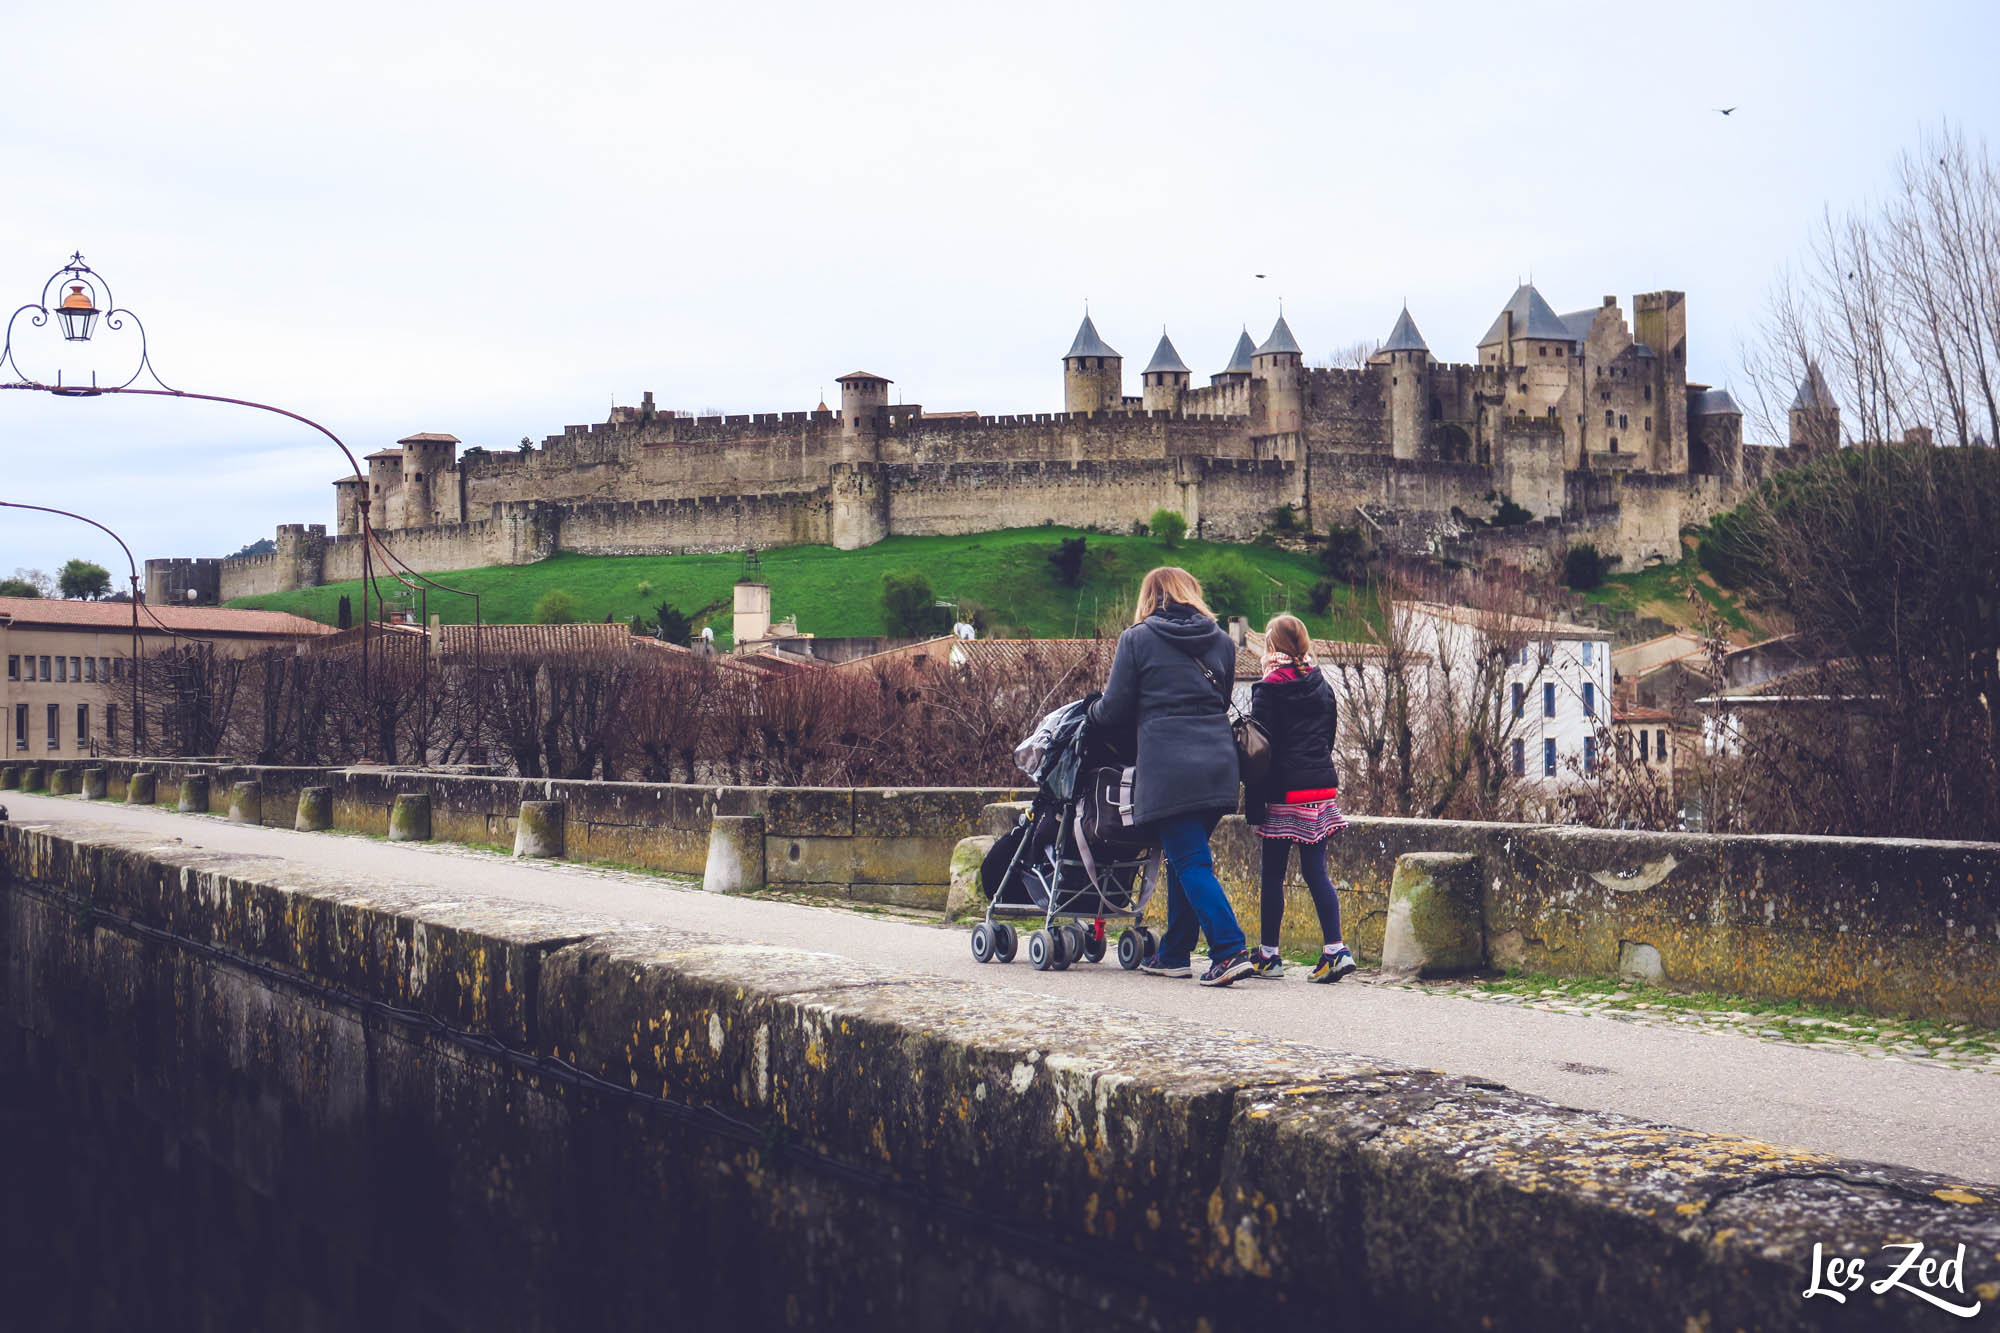 Tourisme à Carcassonne : un retour sur une fréquentation d'avant Covid 